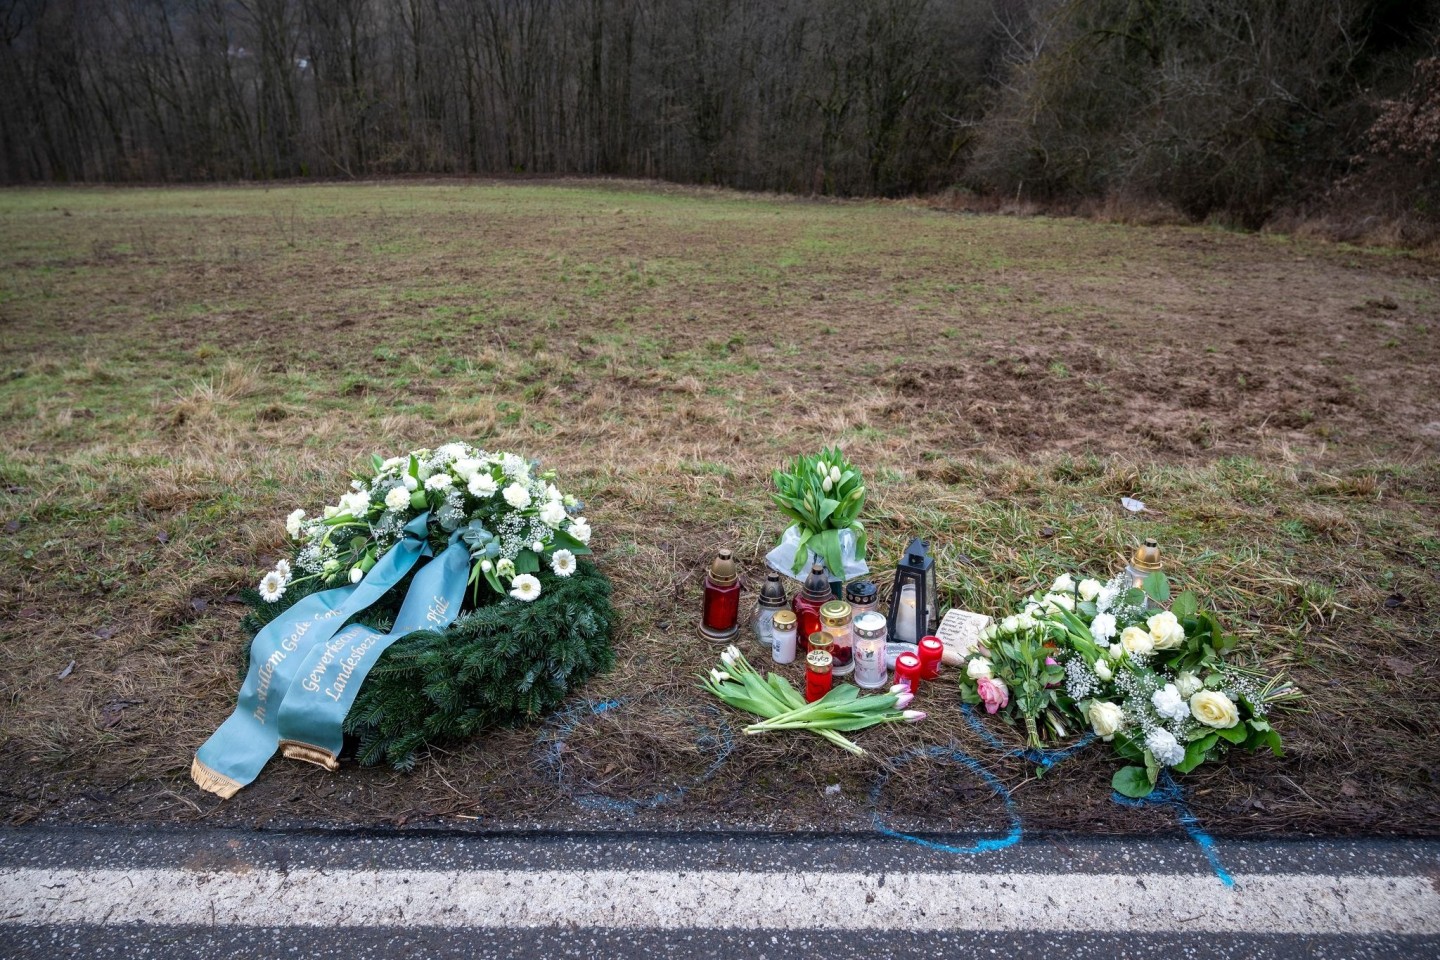 Der Tatort nahe Kusel in der Pfalz. Dort waren im Januar eine Polizistin und ein Polizist erschossen worden.